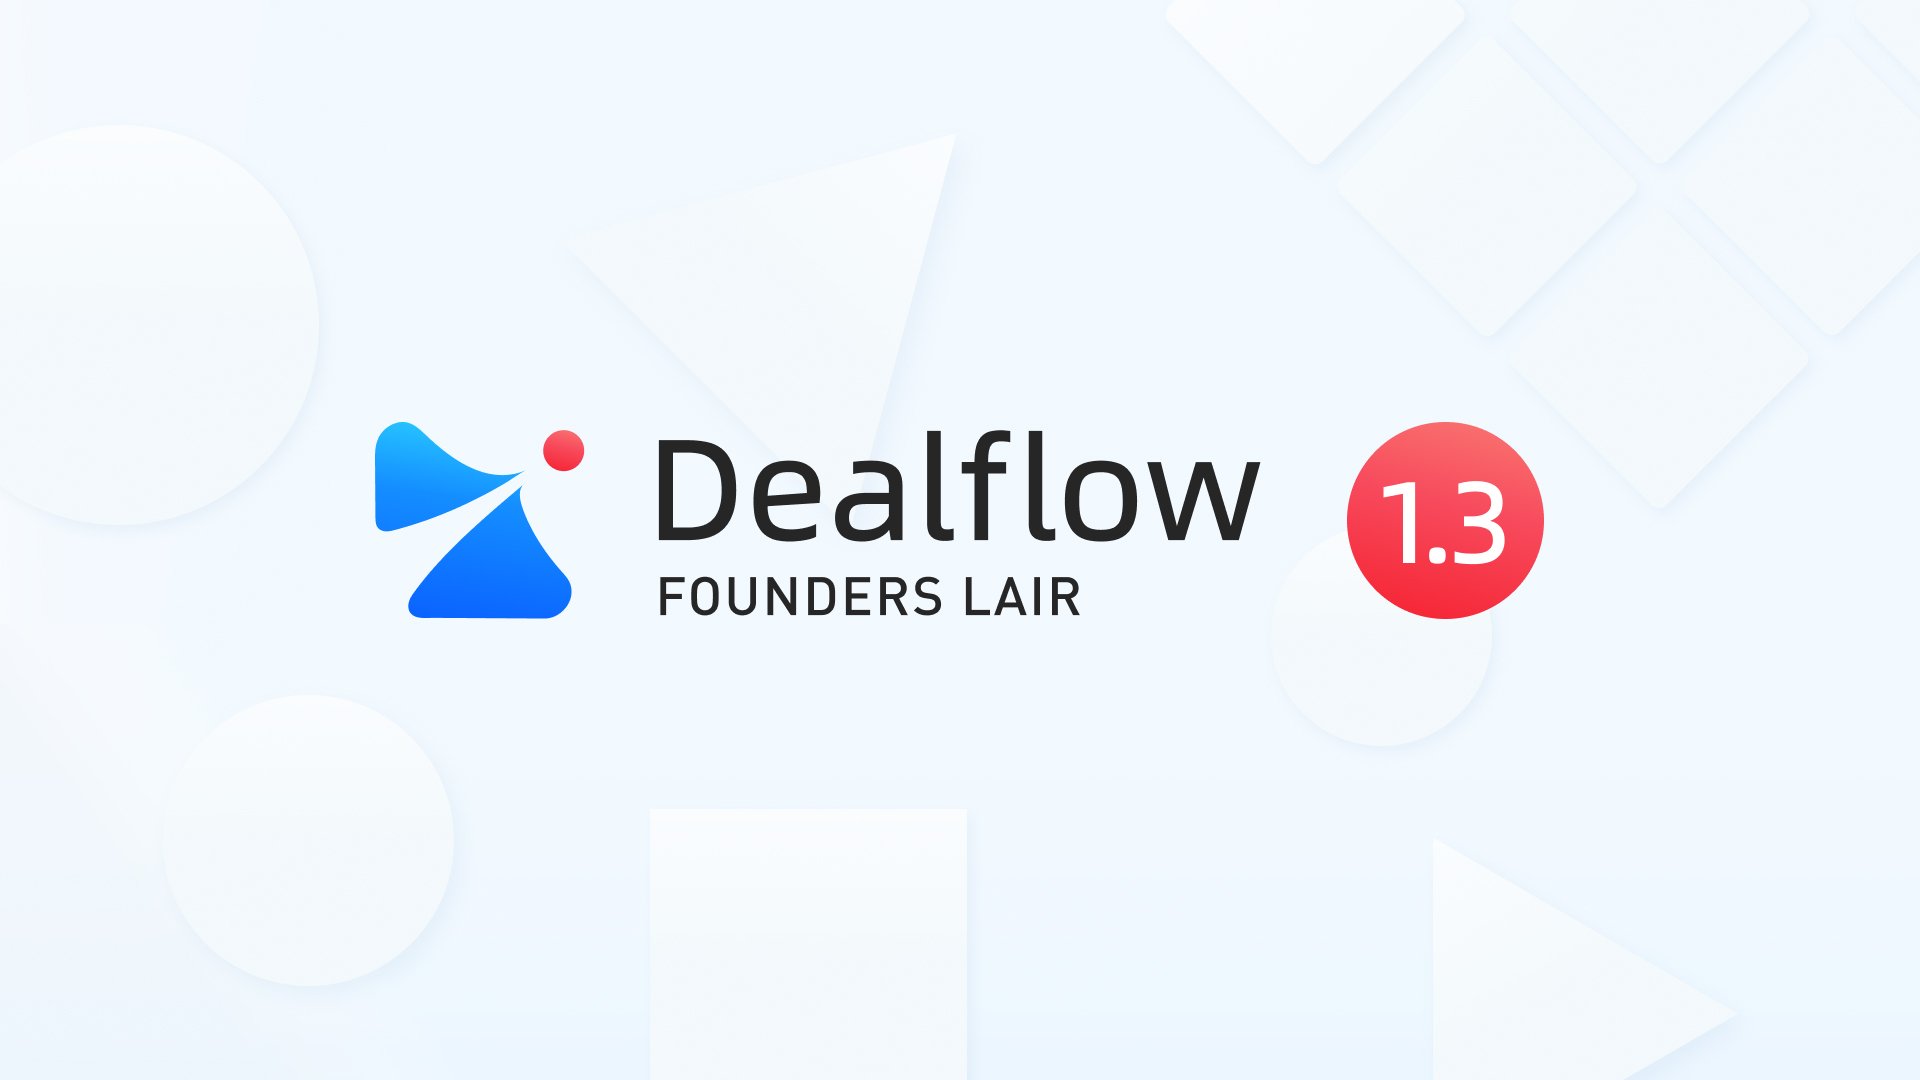 Dealflow 1.3